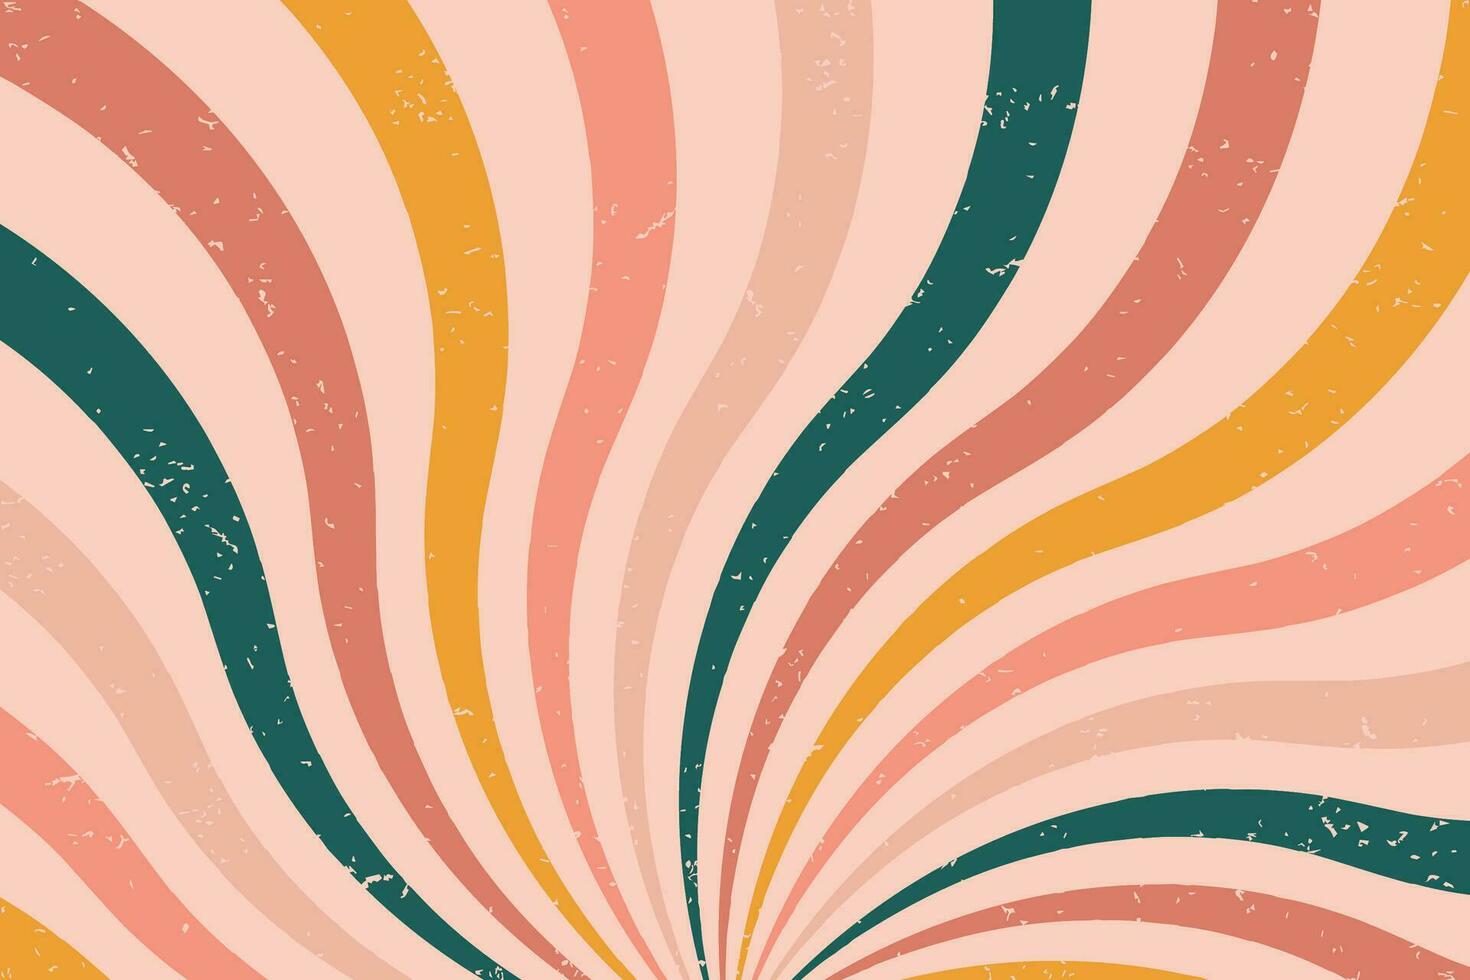 groovy abstract regenboog kolken achtergrond. retro Jaren 60 en Jaren 70 vector ontwerp stijl. zon en regenboog kolken patroon, getextureerde golvend vormen ontwerp, banier, wijnoogst poster gevoel, funky straal elementen.